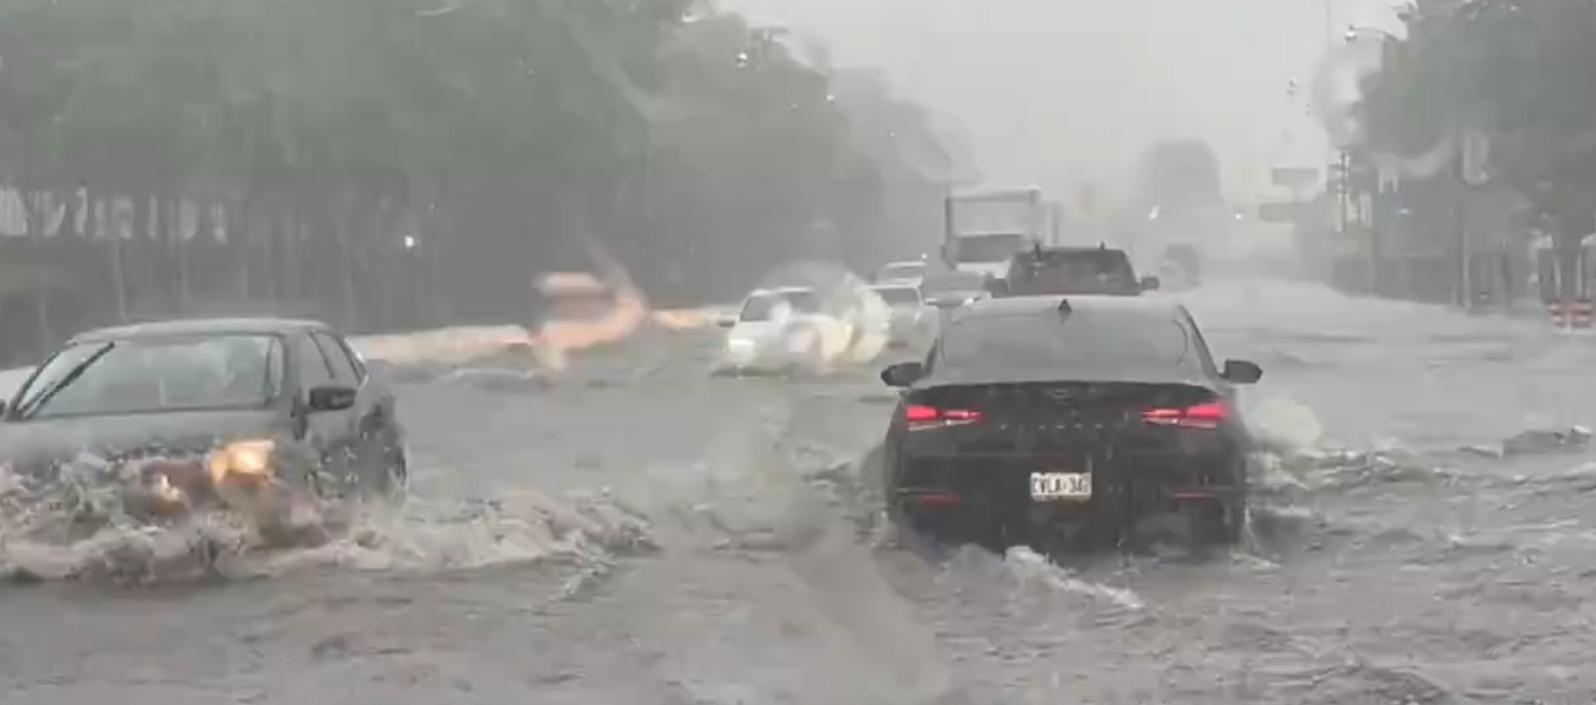 Carros atrapados por la fuerte lluvia.